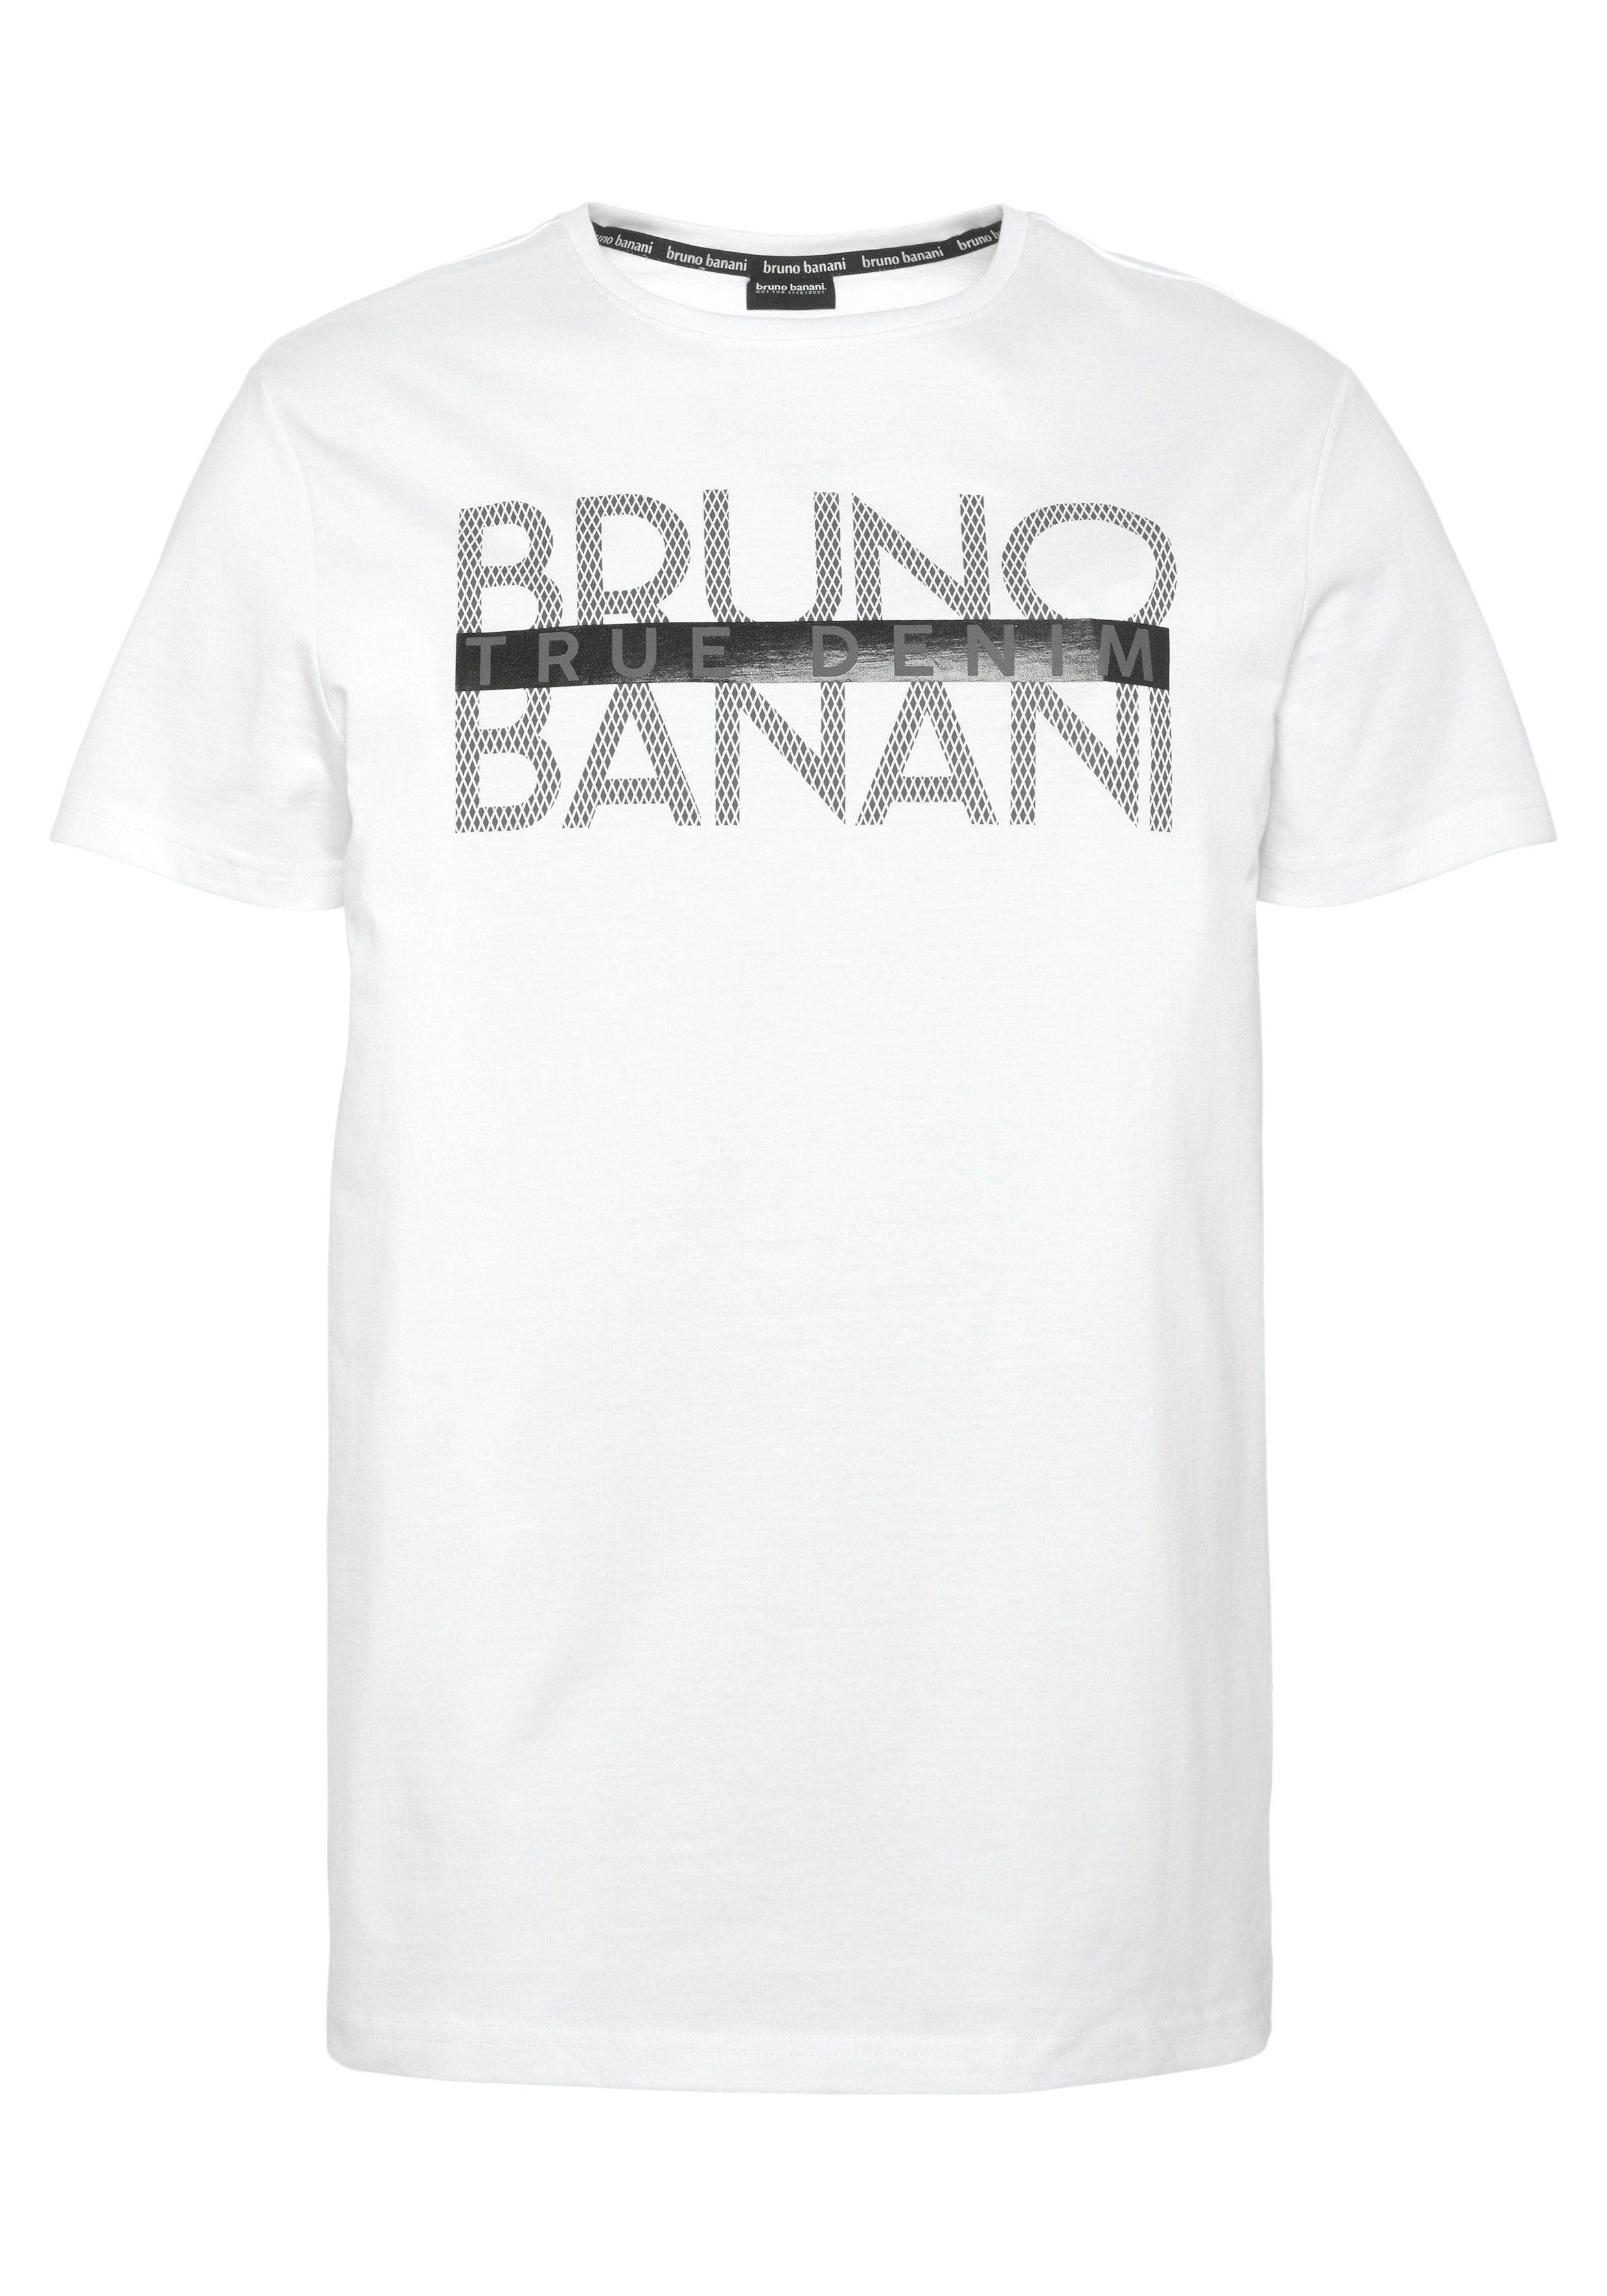 Bruno Banani T-Shirt glänzendem weiß mit Print